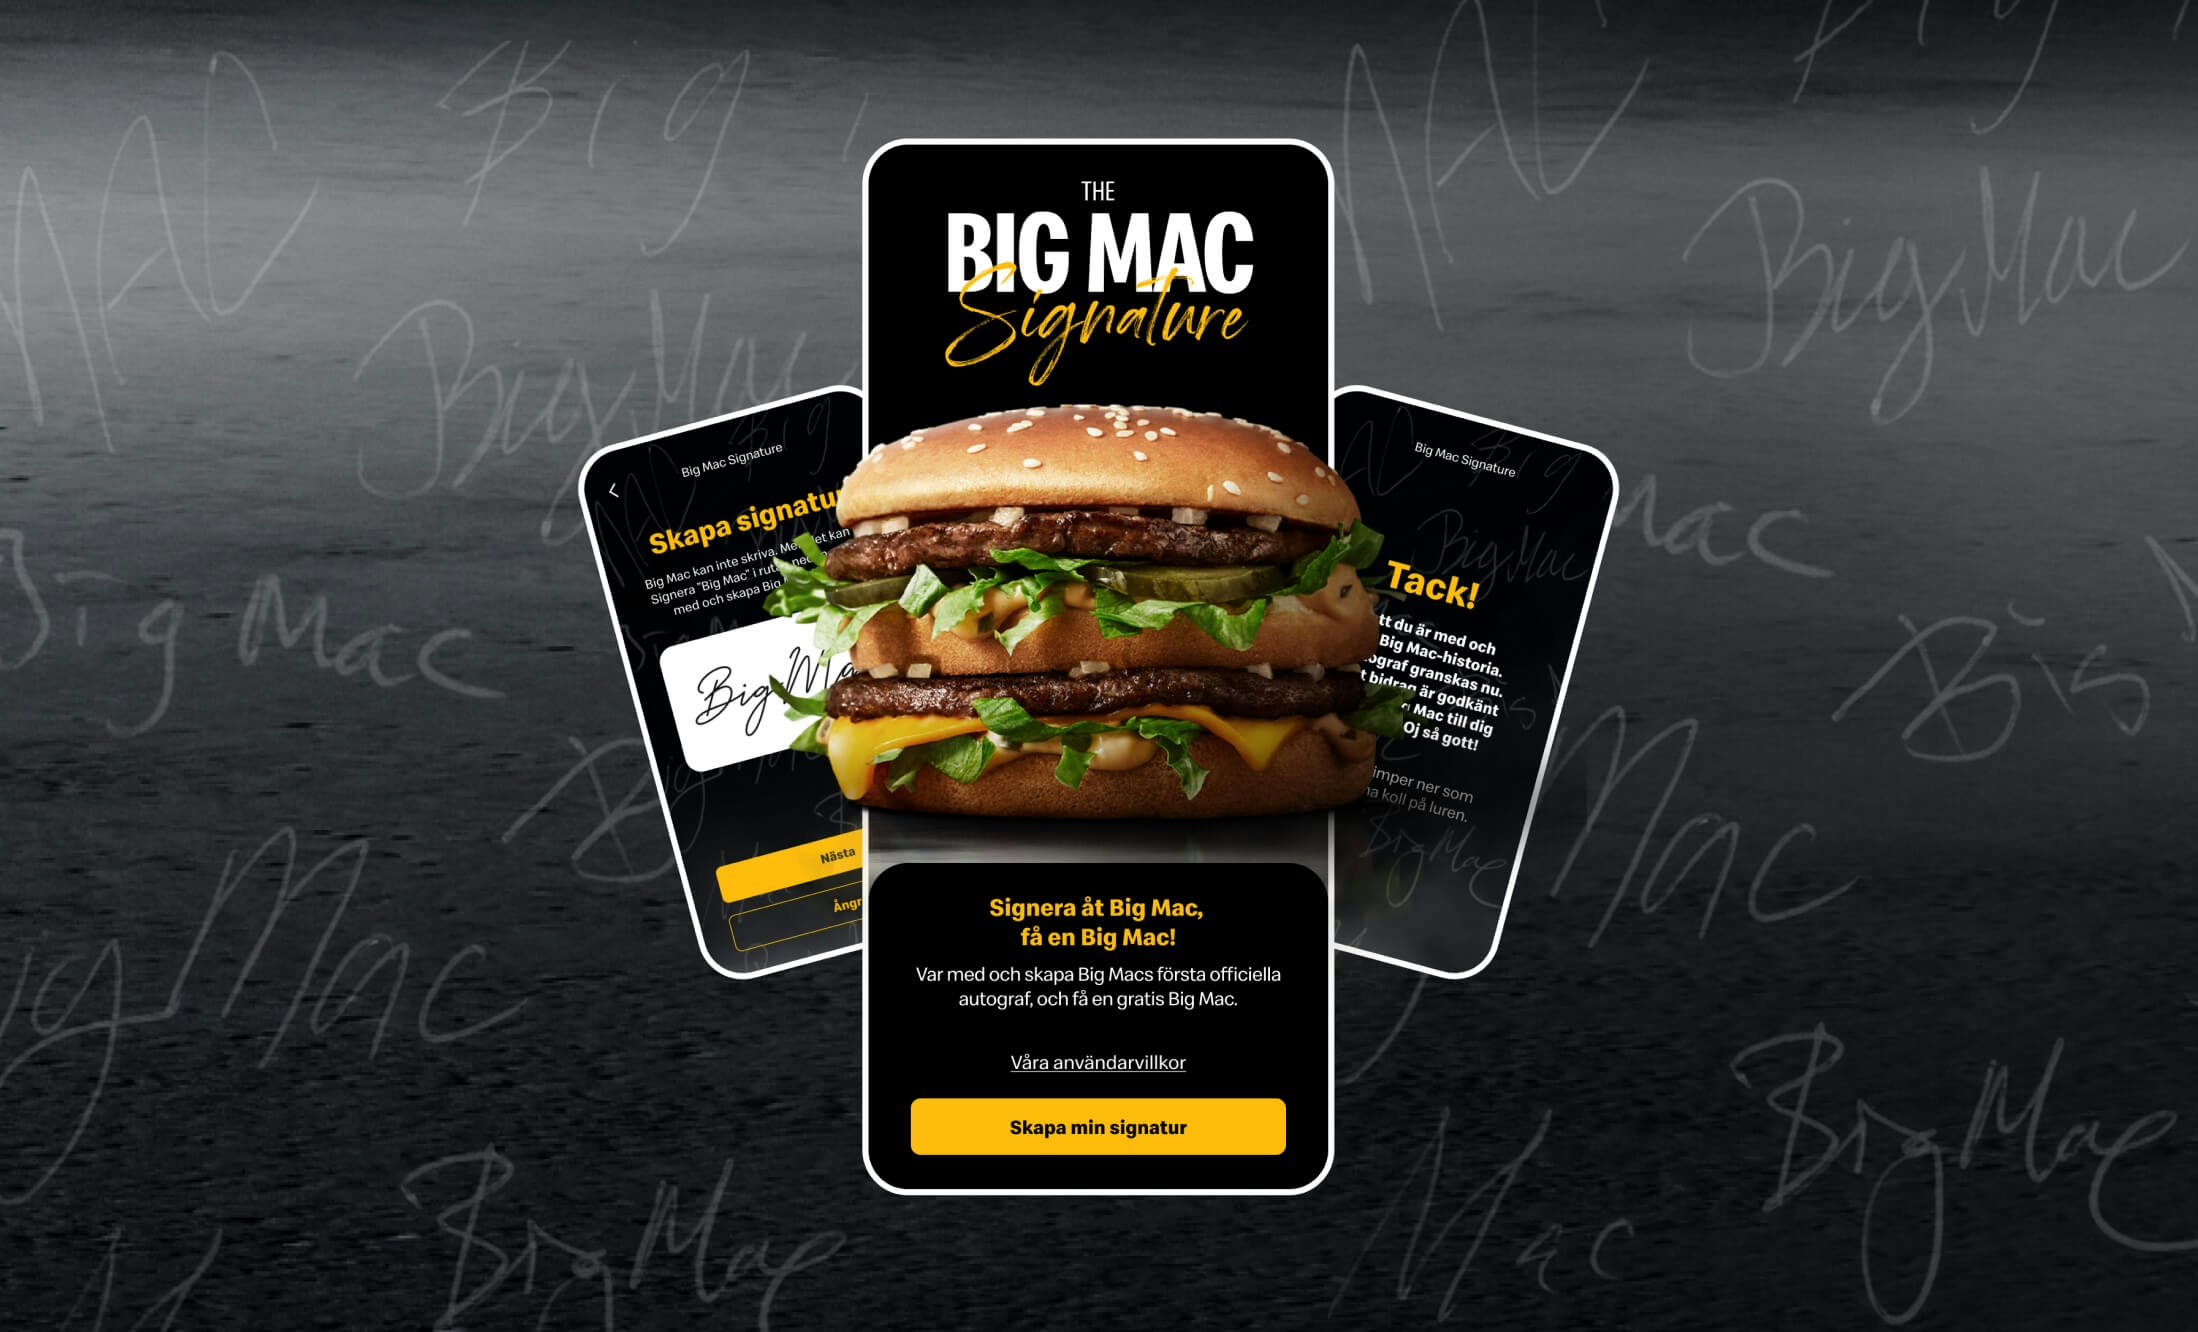 Big mac signature Mcdonalds